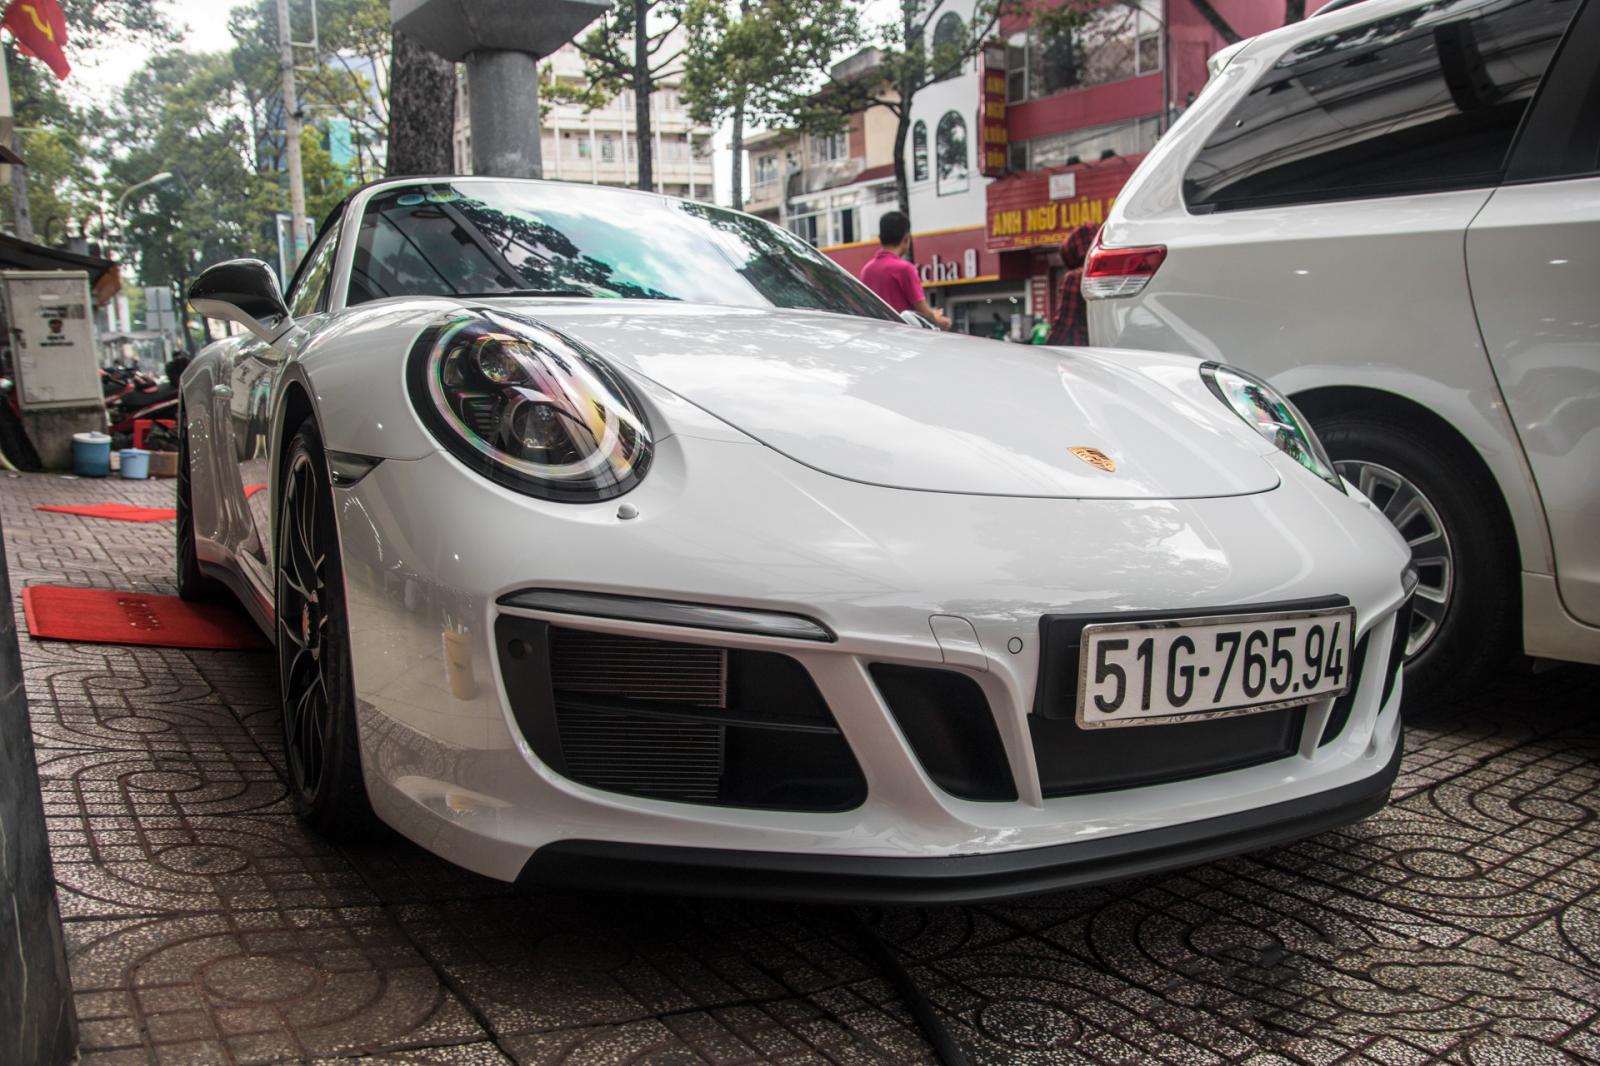 Siêu xe Porsche 911 Targa 4 GTS độc nhất Việt Nam được đăng ký biển số